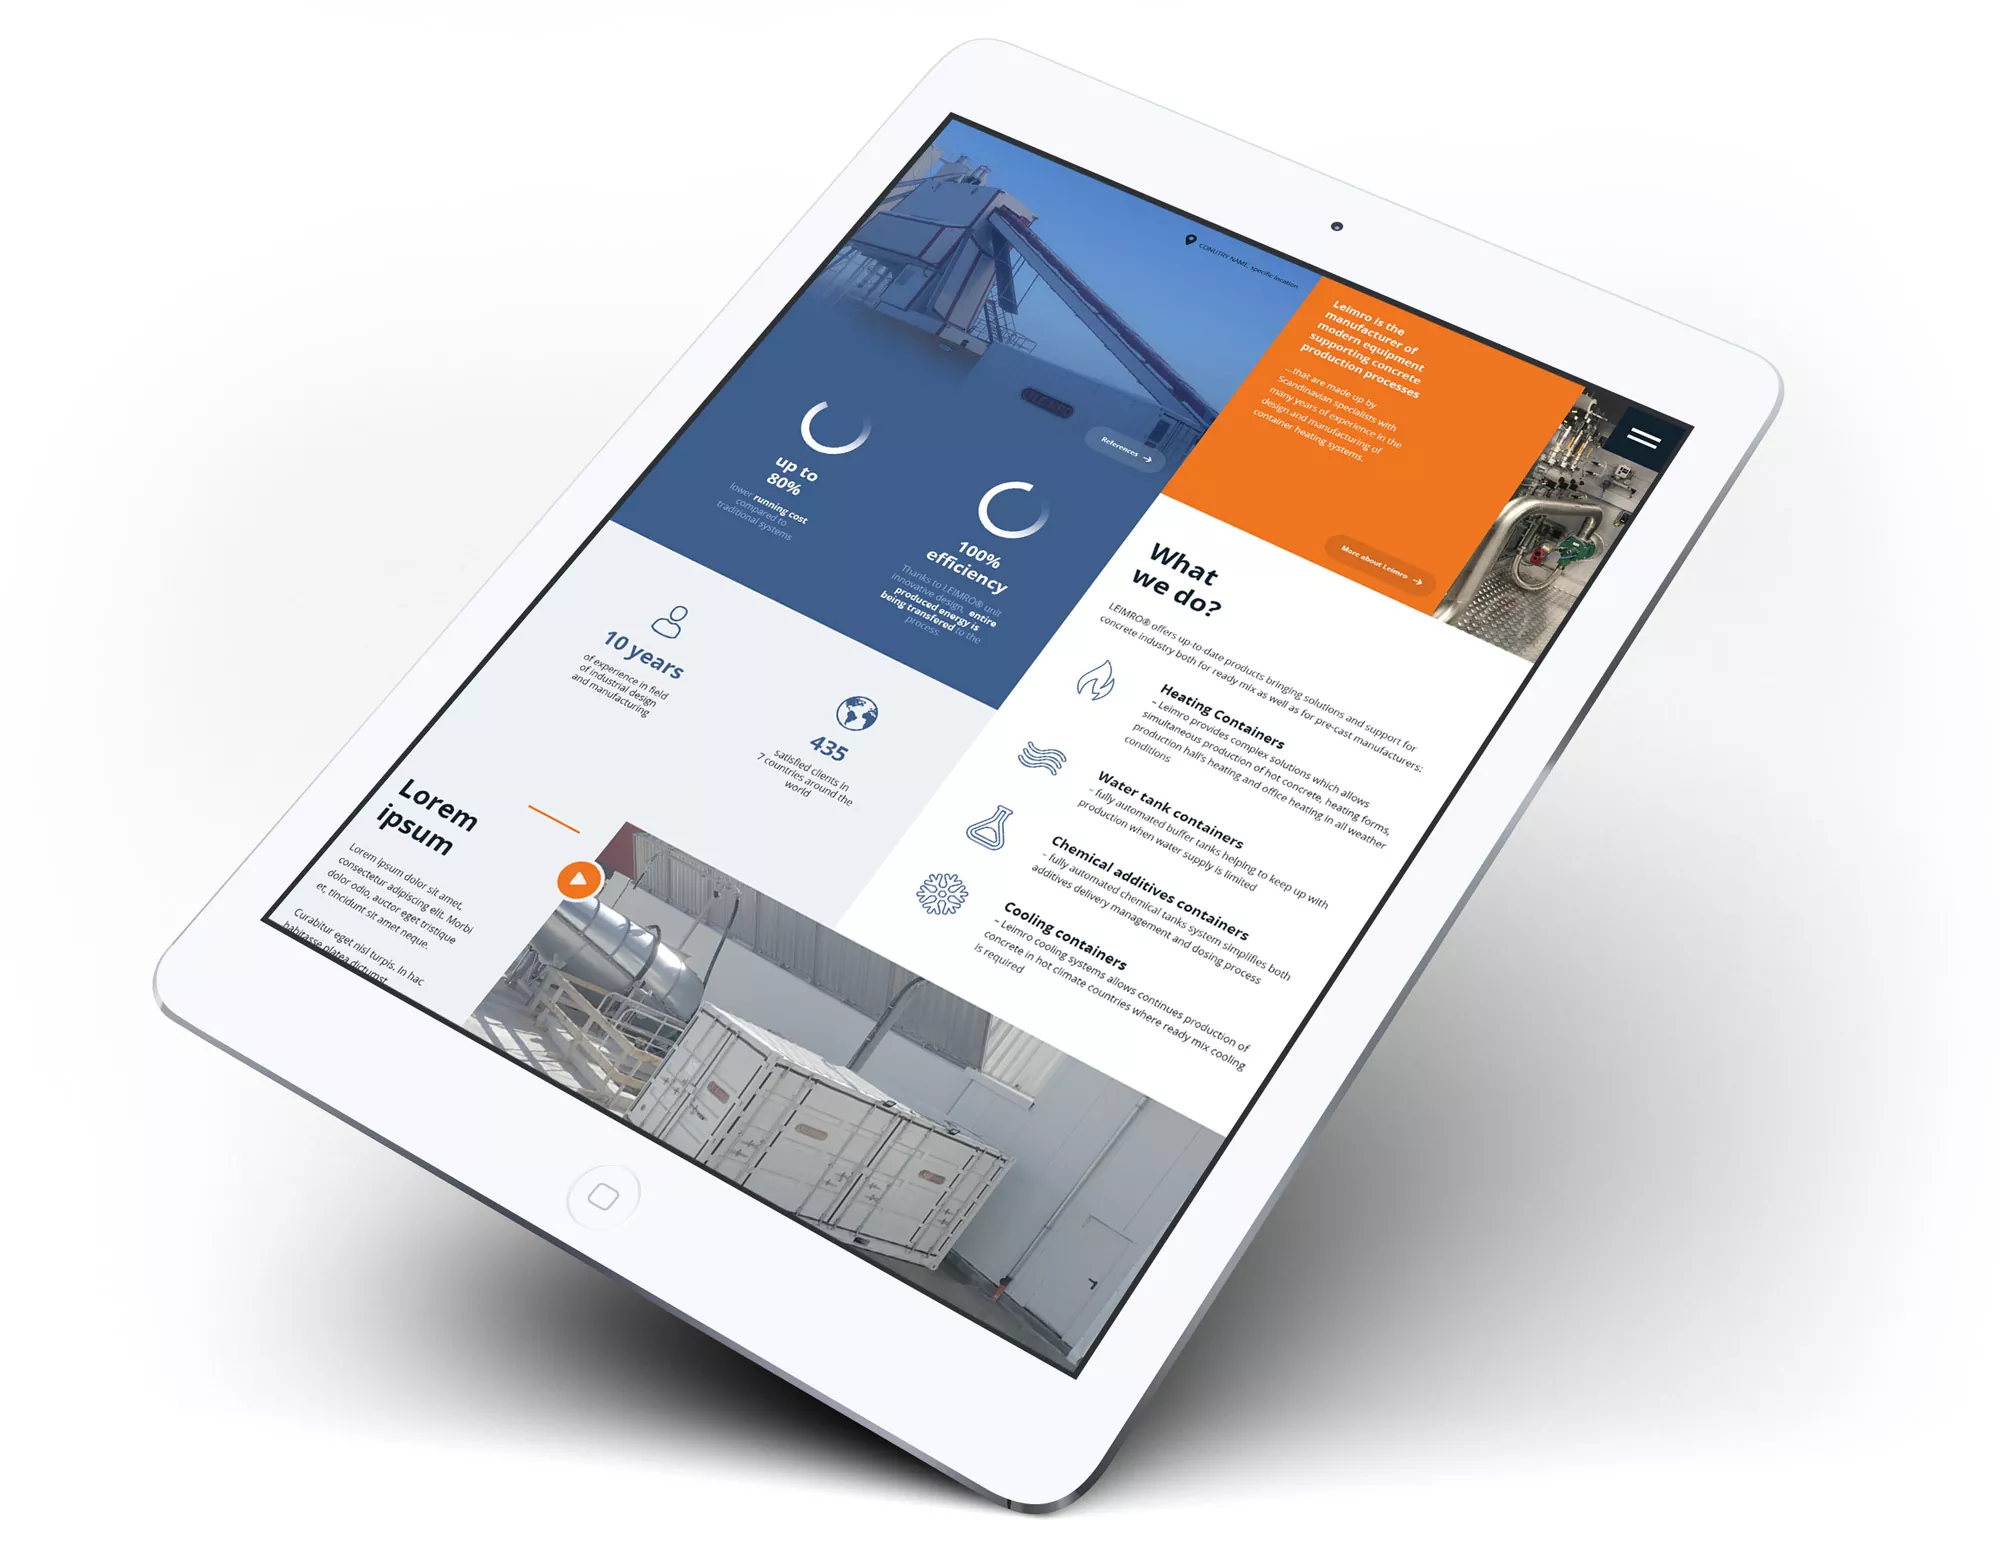 Leimro - projekt strony internetowej z rozwiązaniami dla przemysłu betoniarskiego, wizualizacja na ipadzie